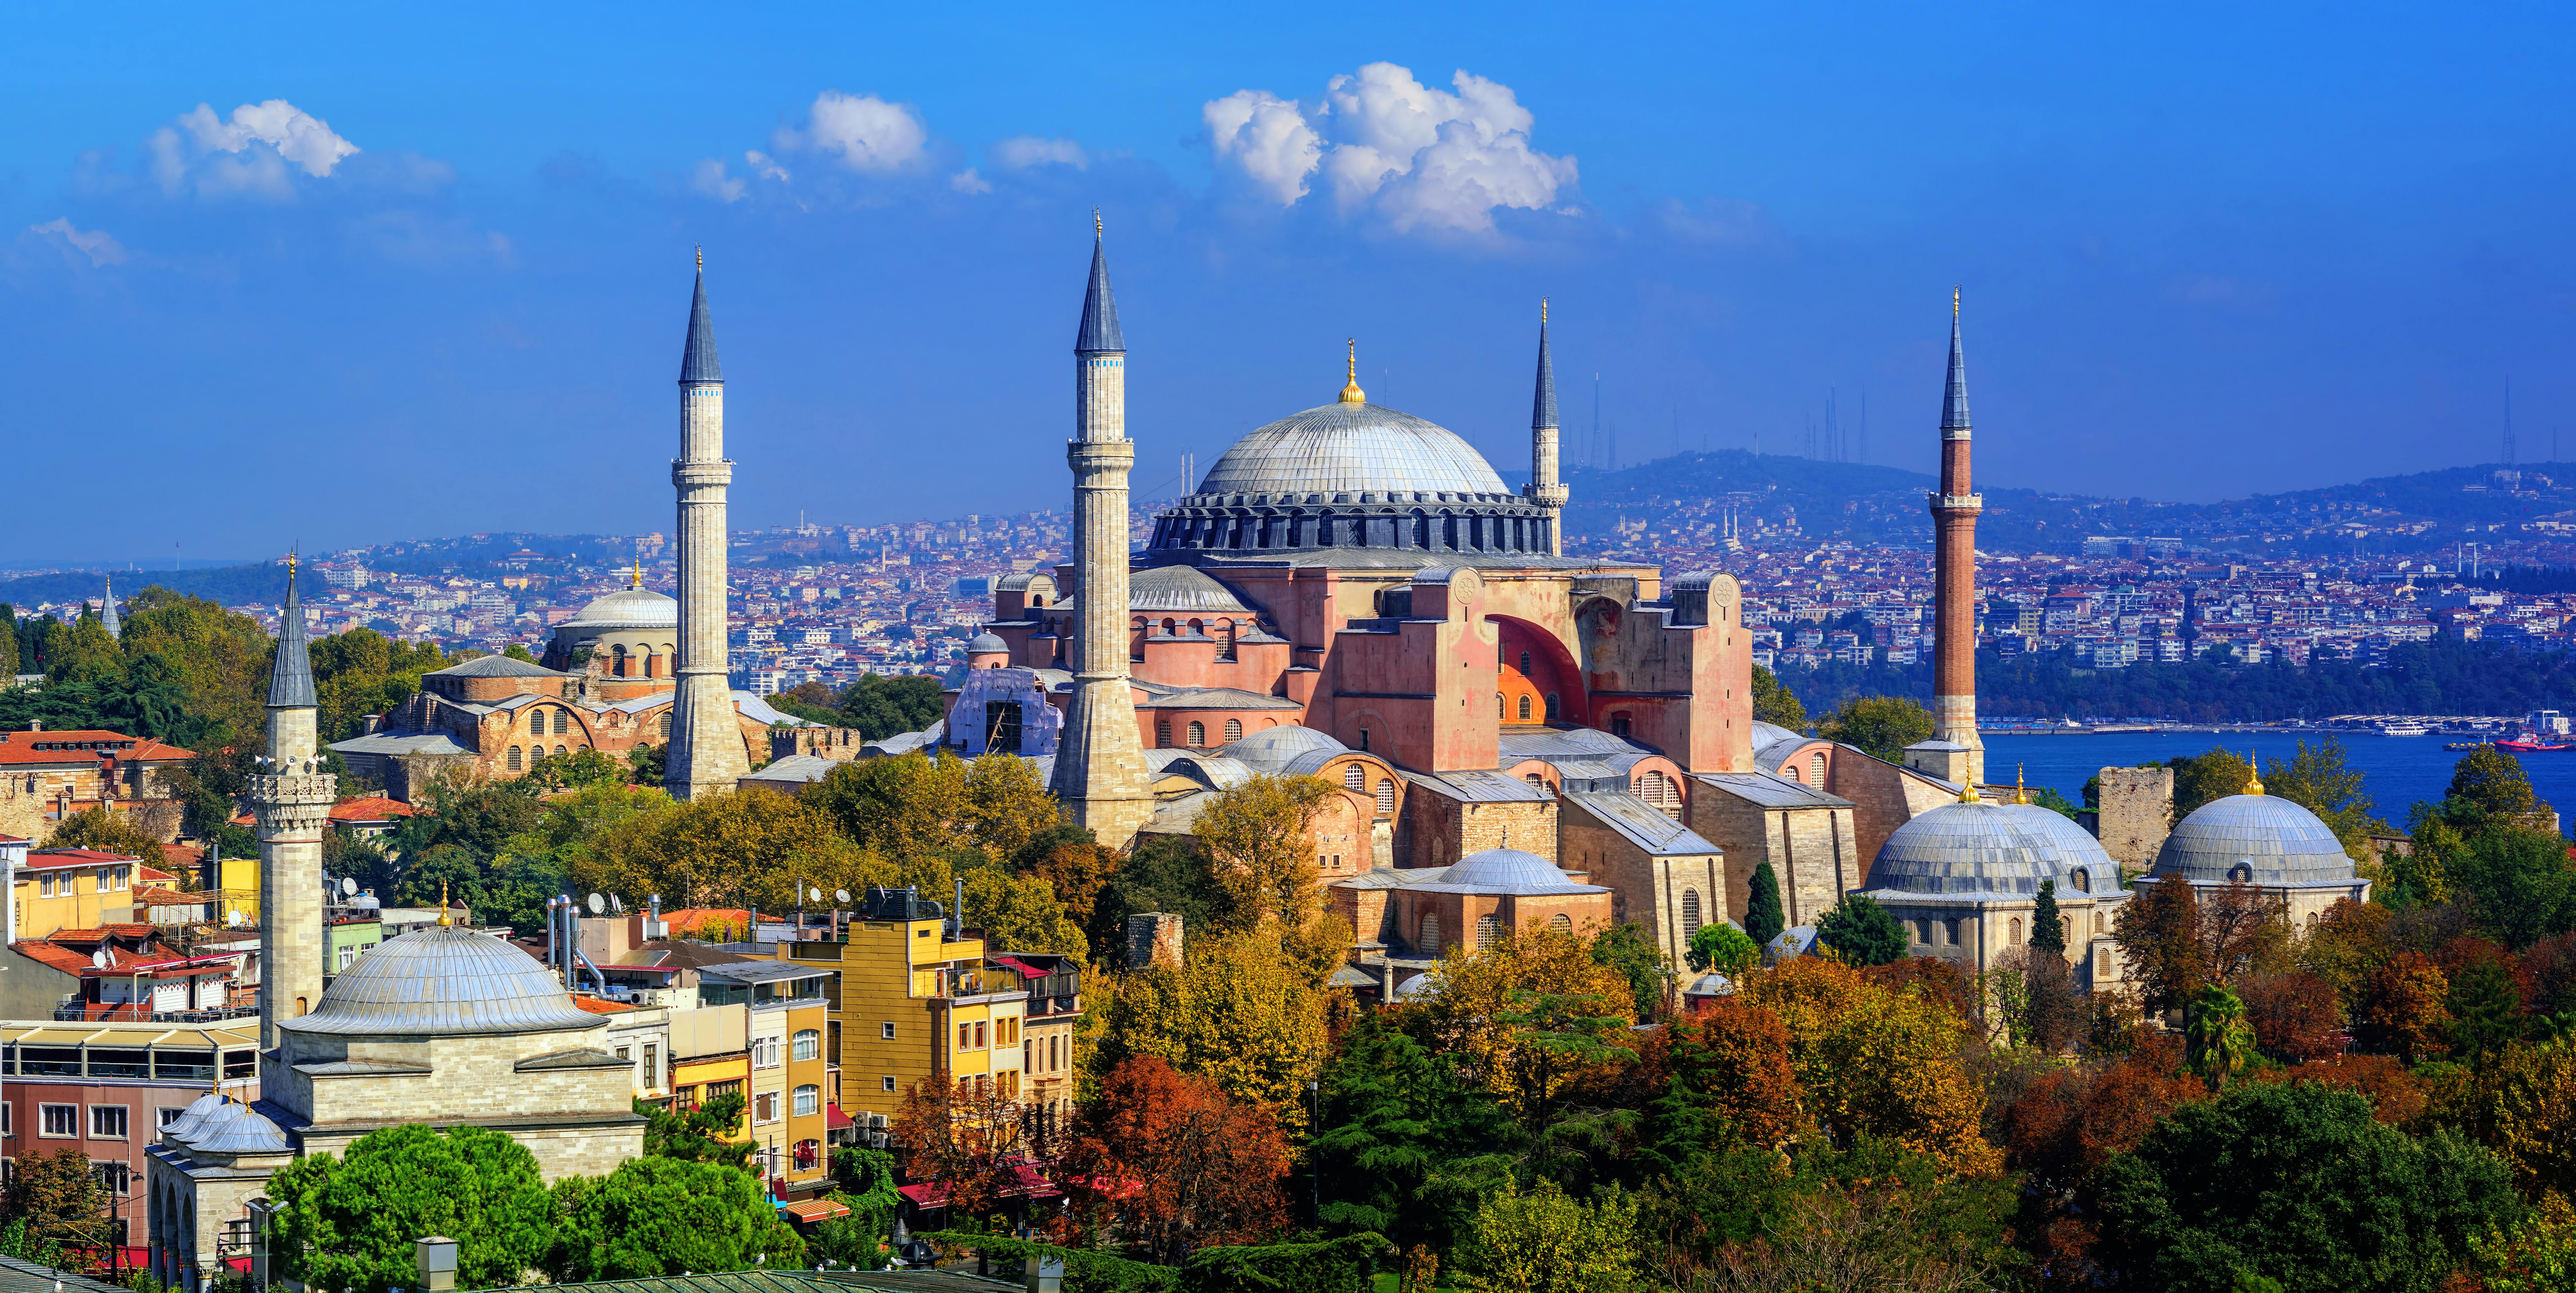 Excursão à Hagia Sophia, Palácio de Topkapi e Cisterna da Basílica em Istambul